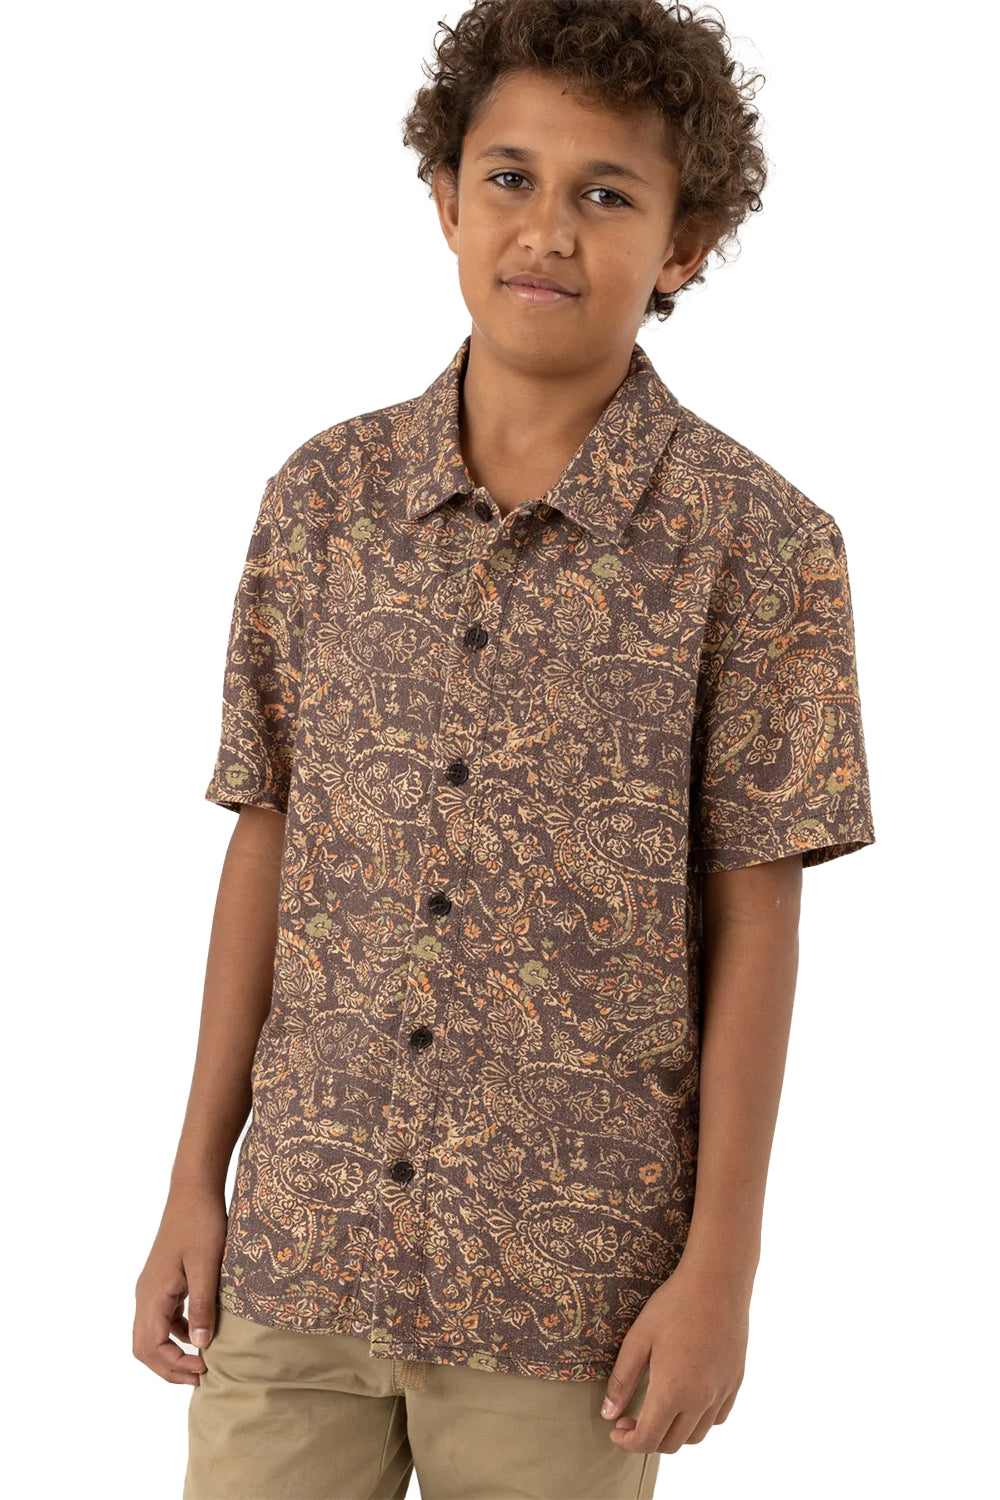 Rhythm Boys Sumbawa Short Sleeve Shirt | Sanbah Australia